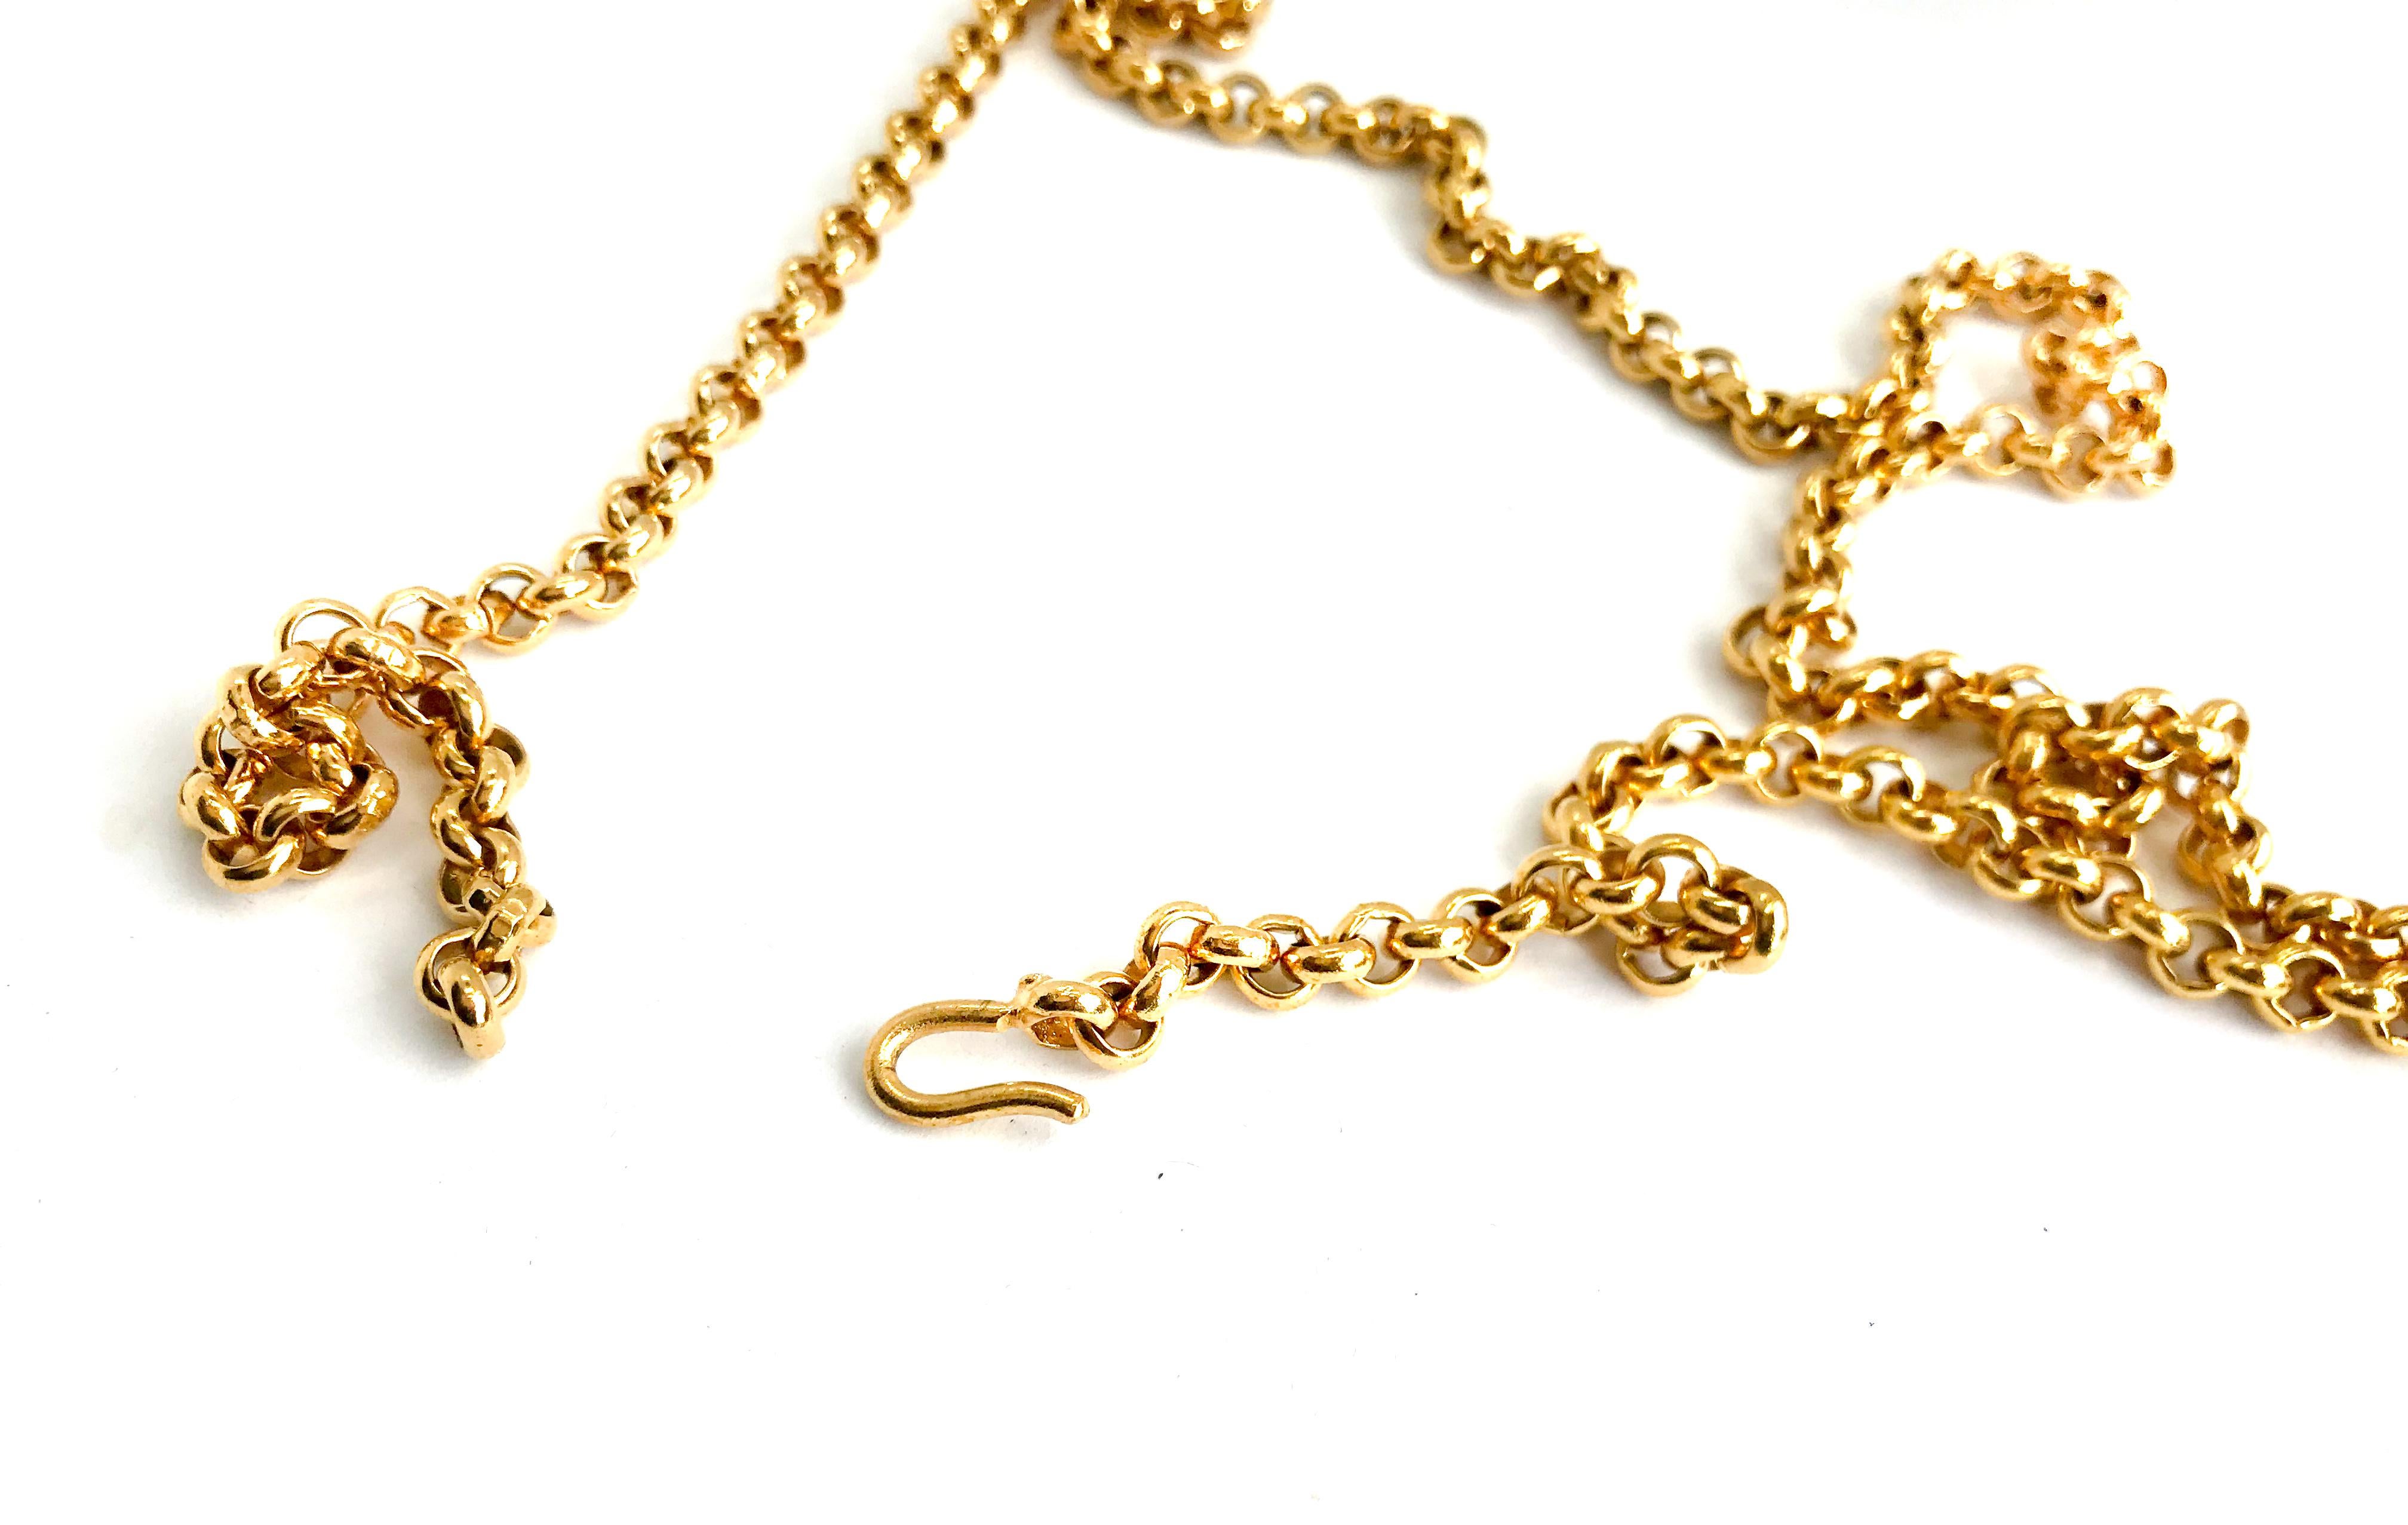 Chanel 1990s Gold Plated Belcher Chain für Damen oder Herren